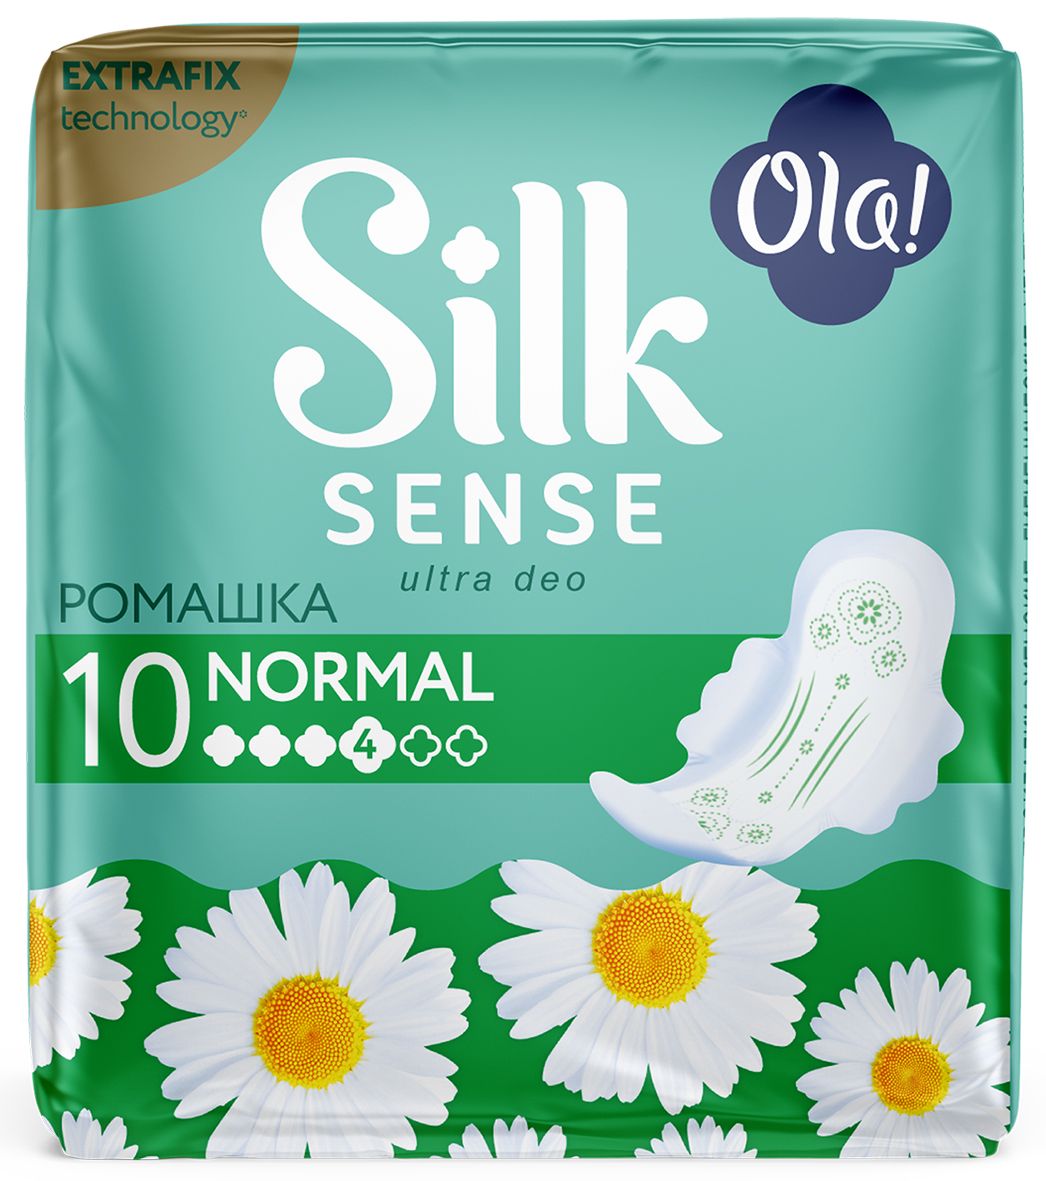 Прокладки Ola! Silk Sense Ultra Deo Normal гигиенические ромашка 10 шт.